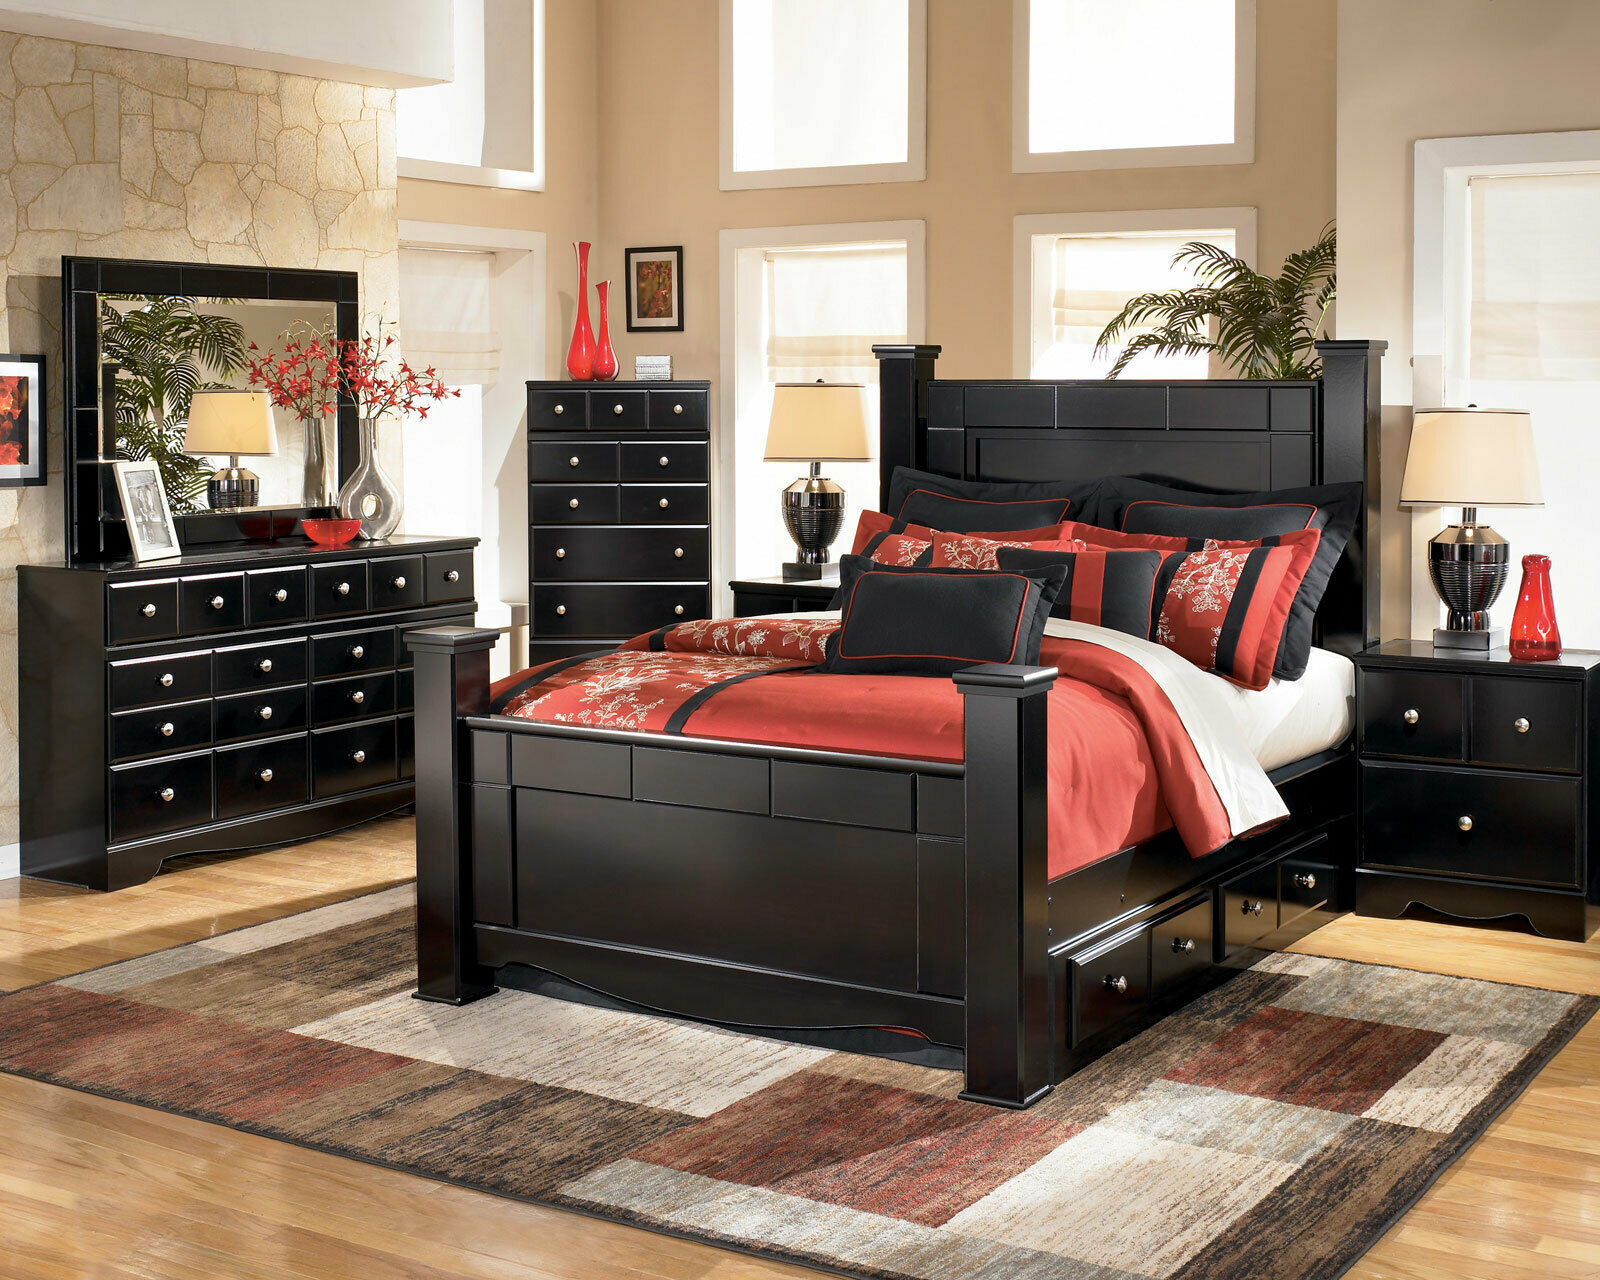 3 piece bedroom furniture set black